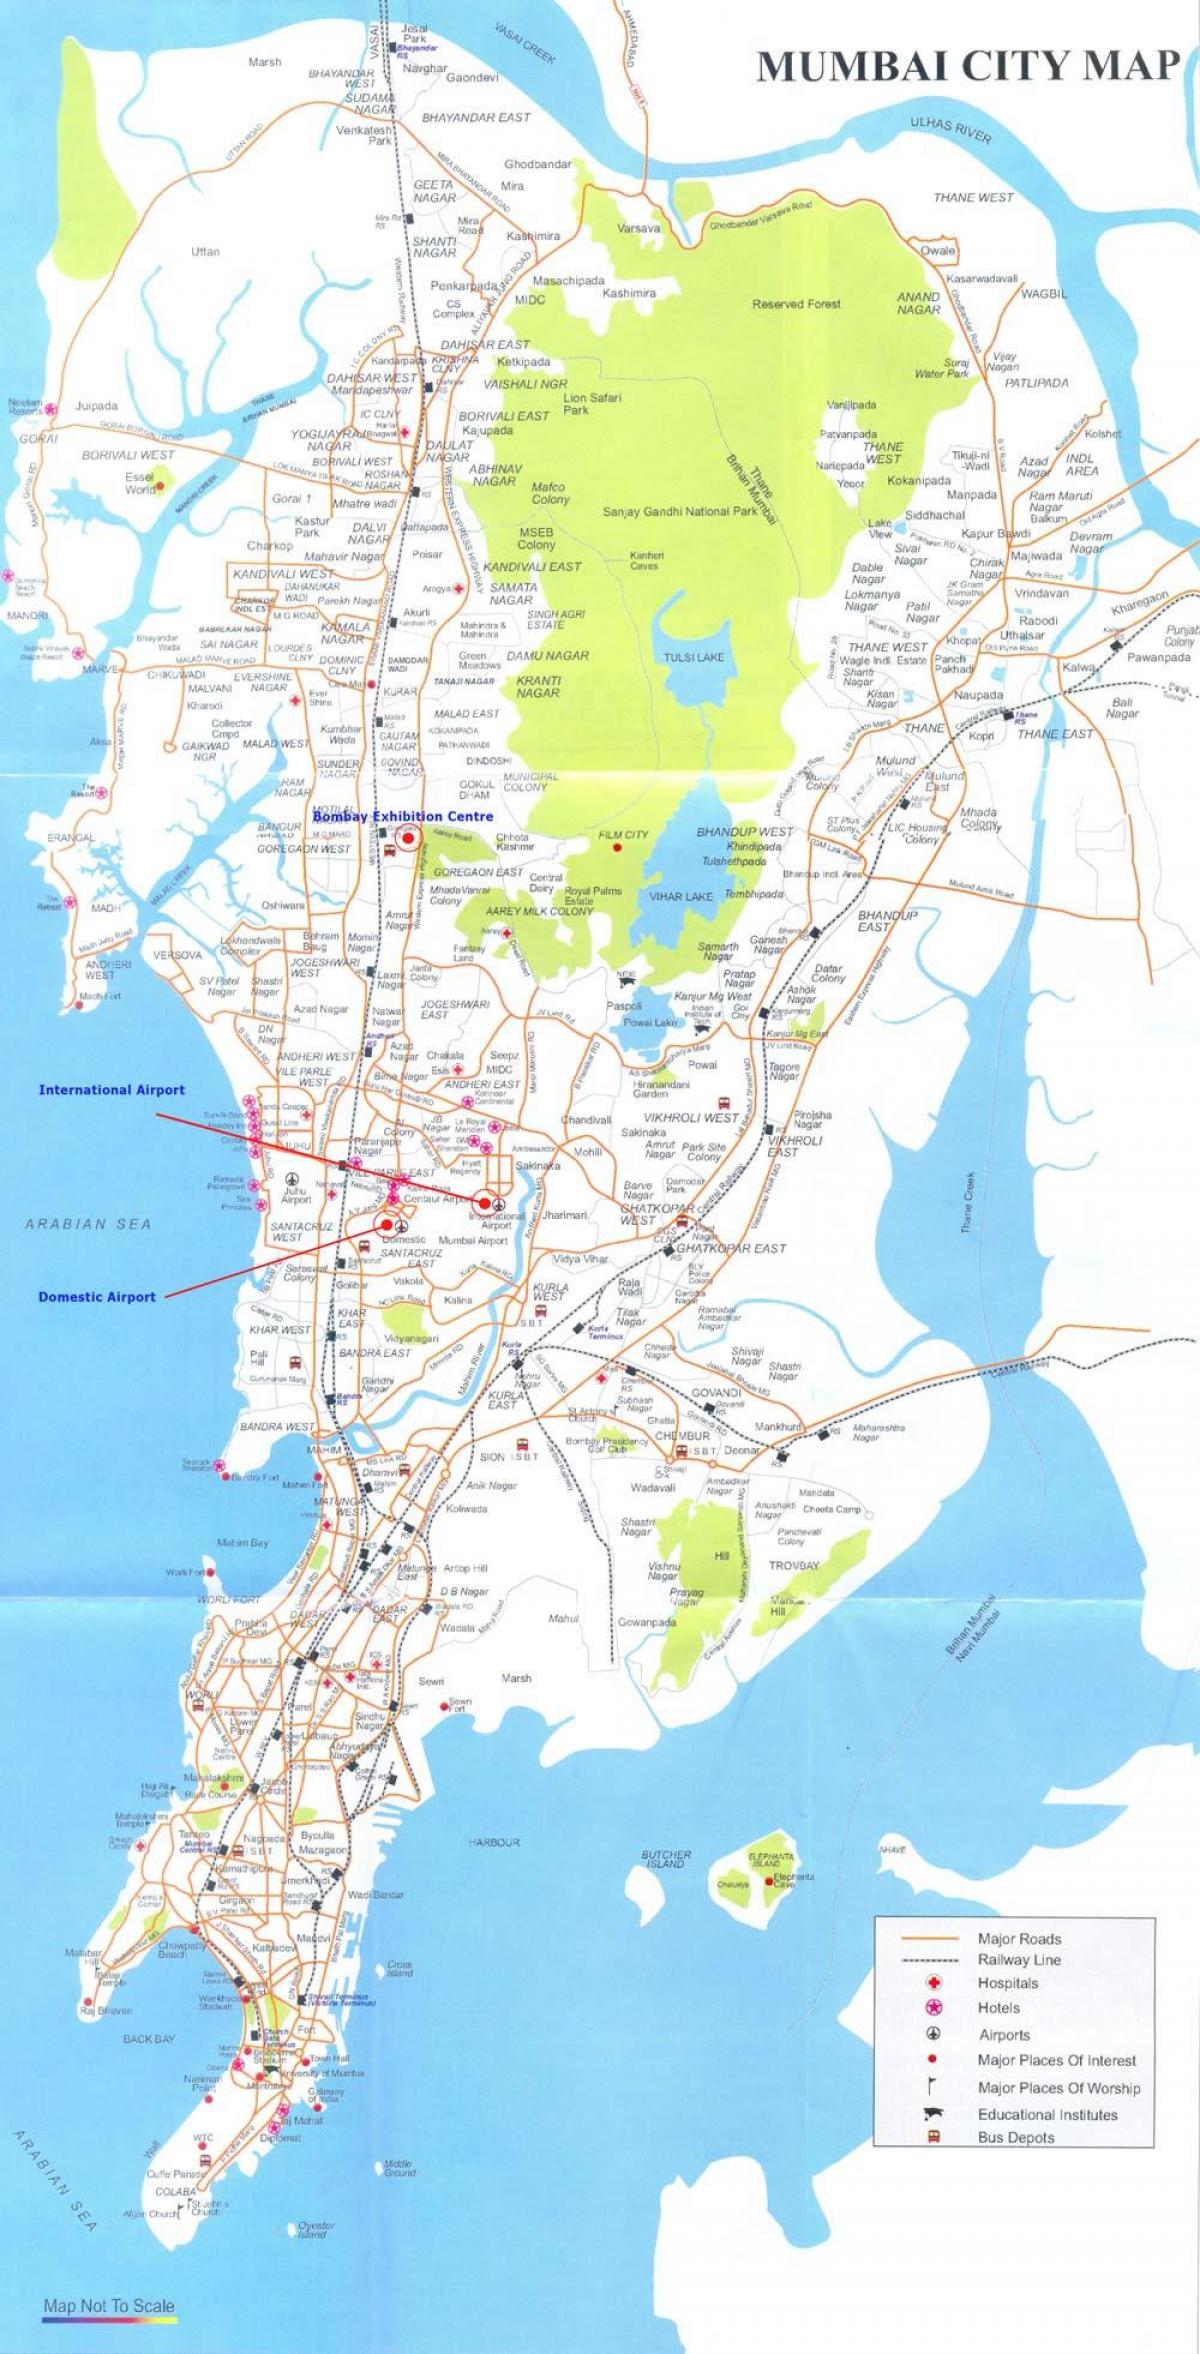 મુંબઇ પર એક નકશો